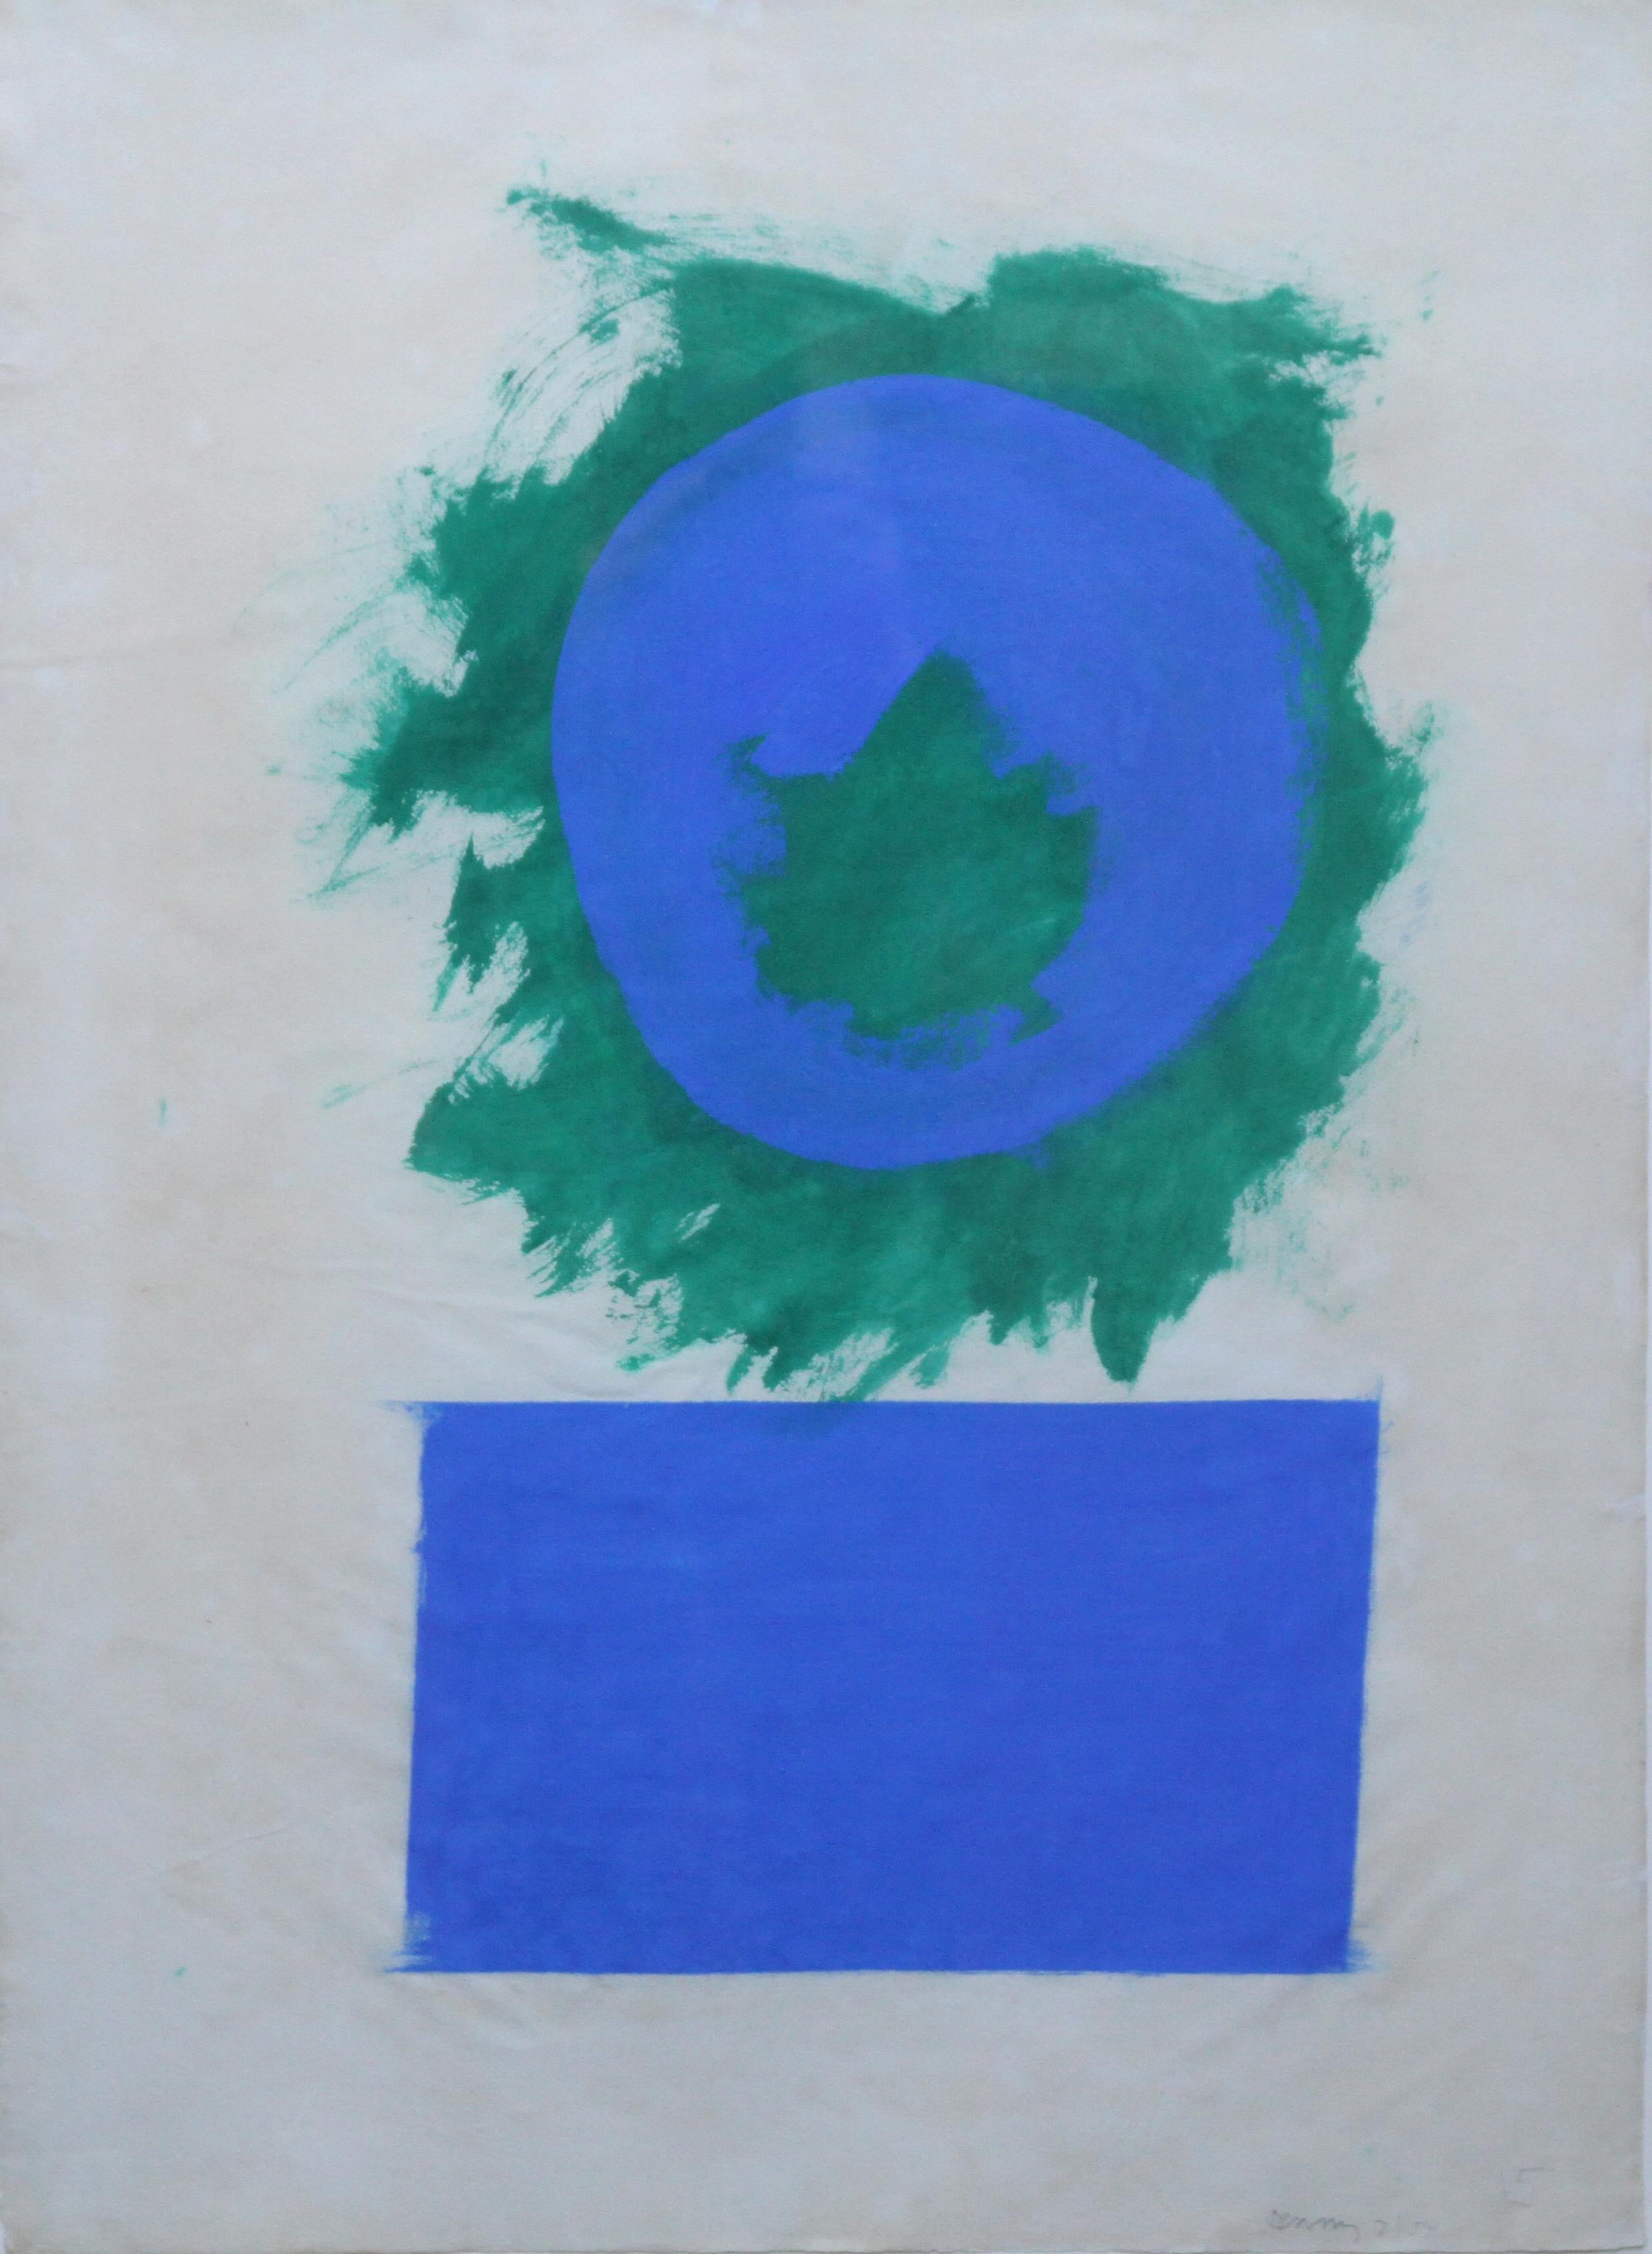 Formes bleues et vertes - Art abstrait britannique des années 50 - Peinture à l'huile sur papier couleurfield - Painting de Robyn Denny